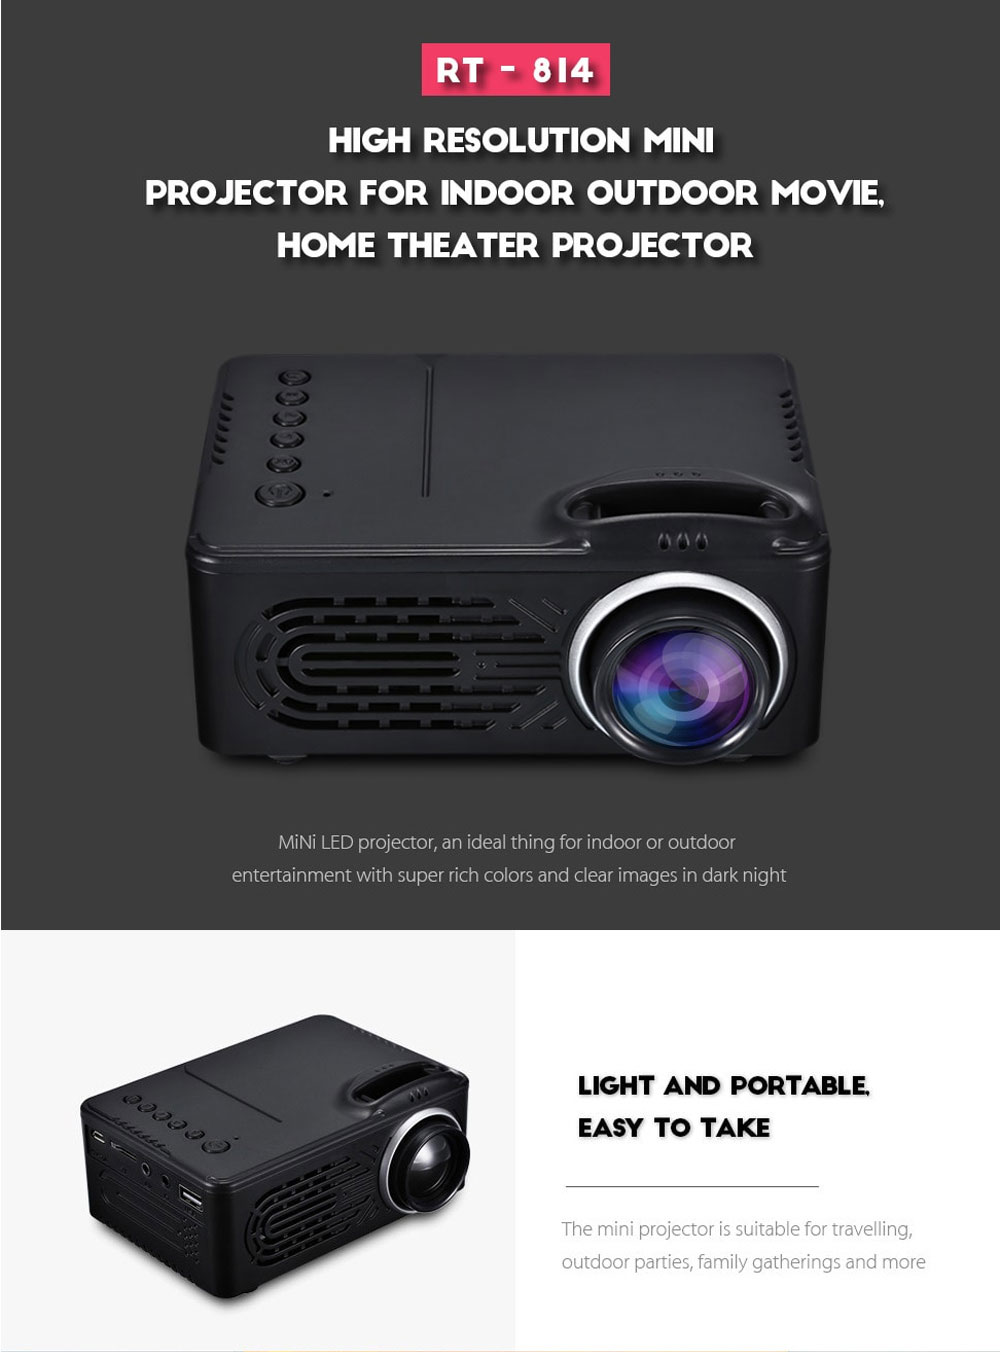 rigal rd-814 mini projector